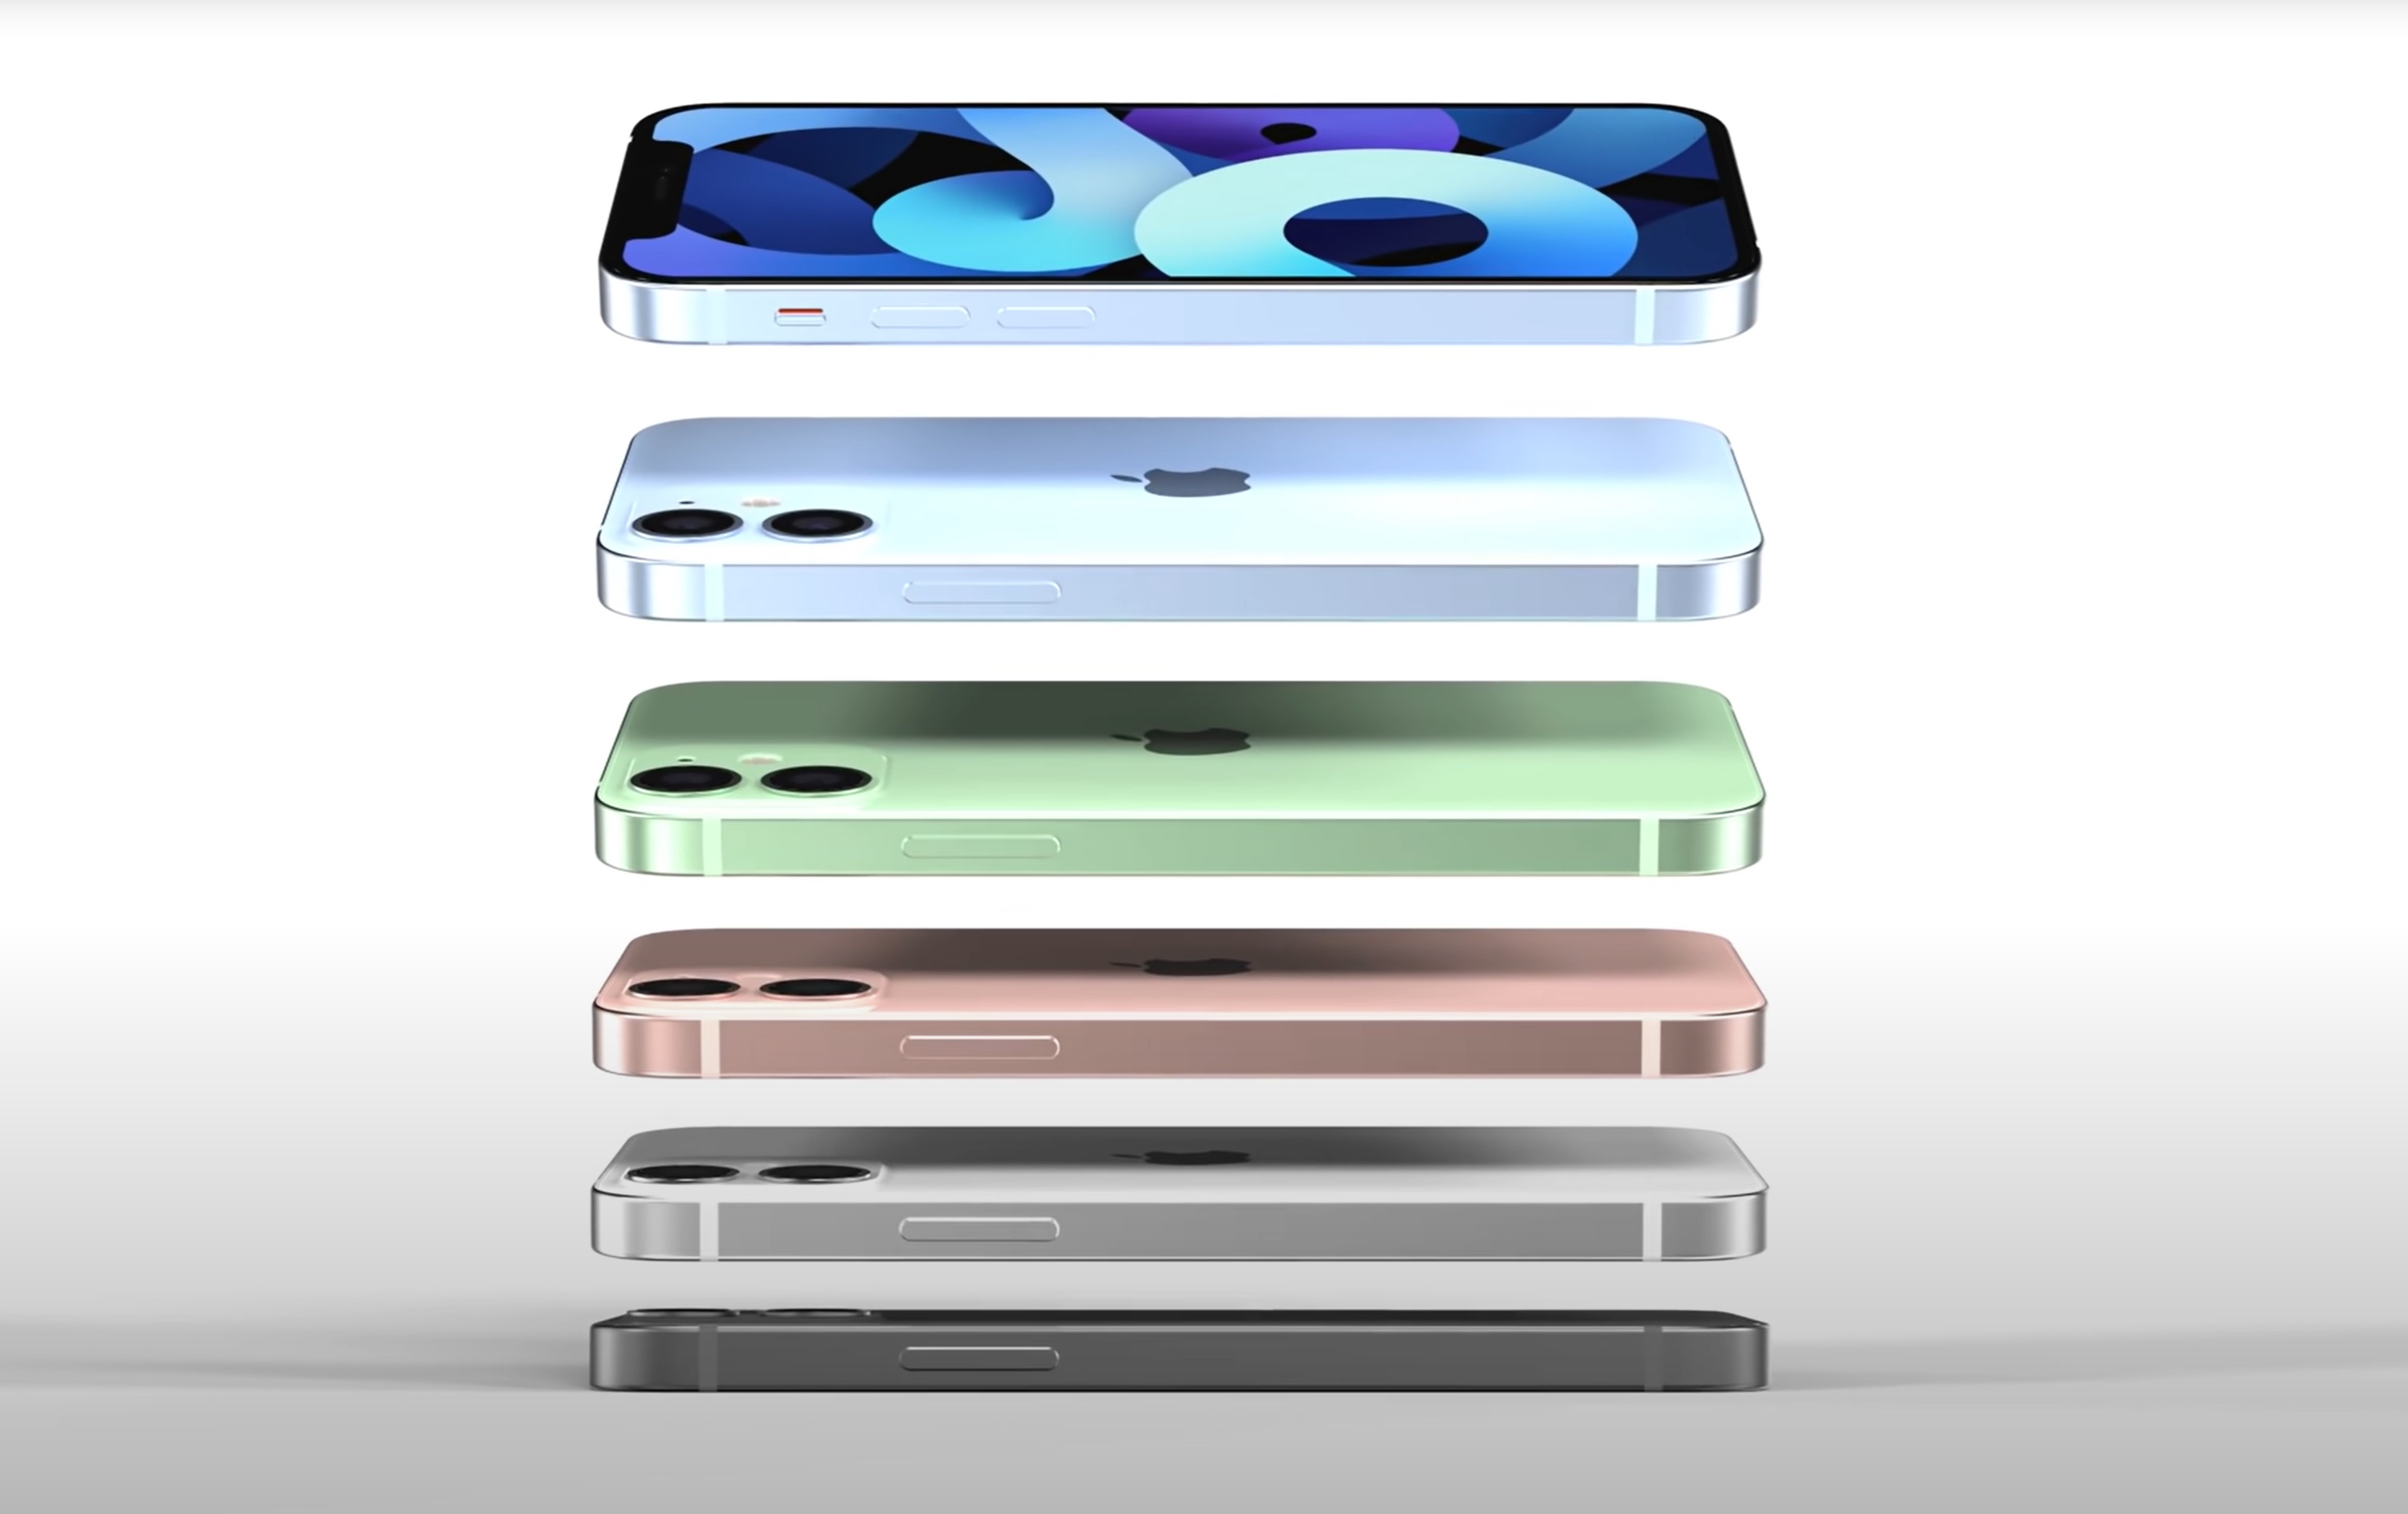 Funf Neue Iphones Handler Listen Apple Iphone 12 Farben Und Speicheroptionen Notebookcheck Com News